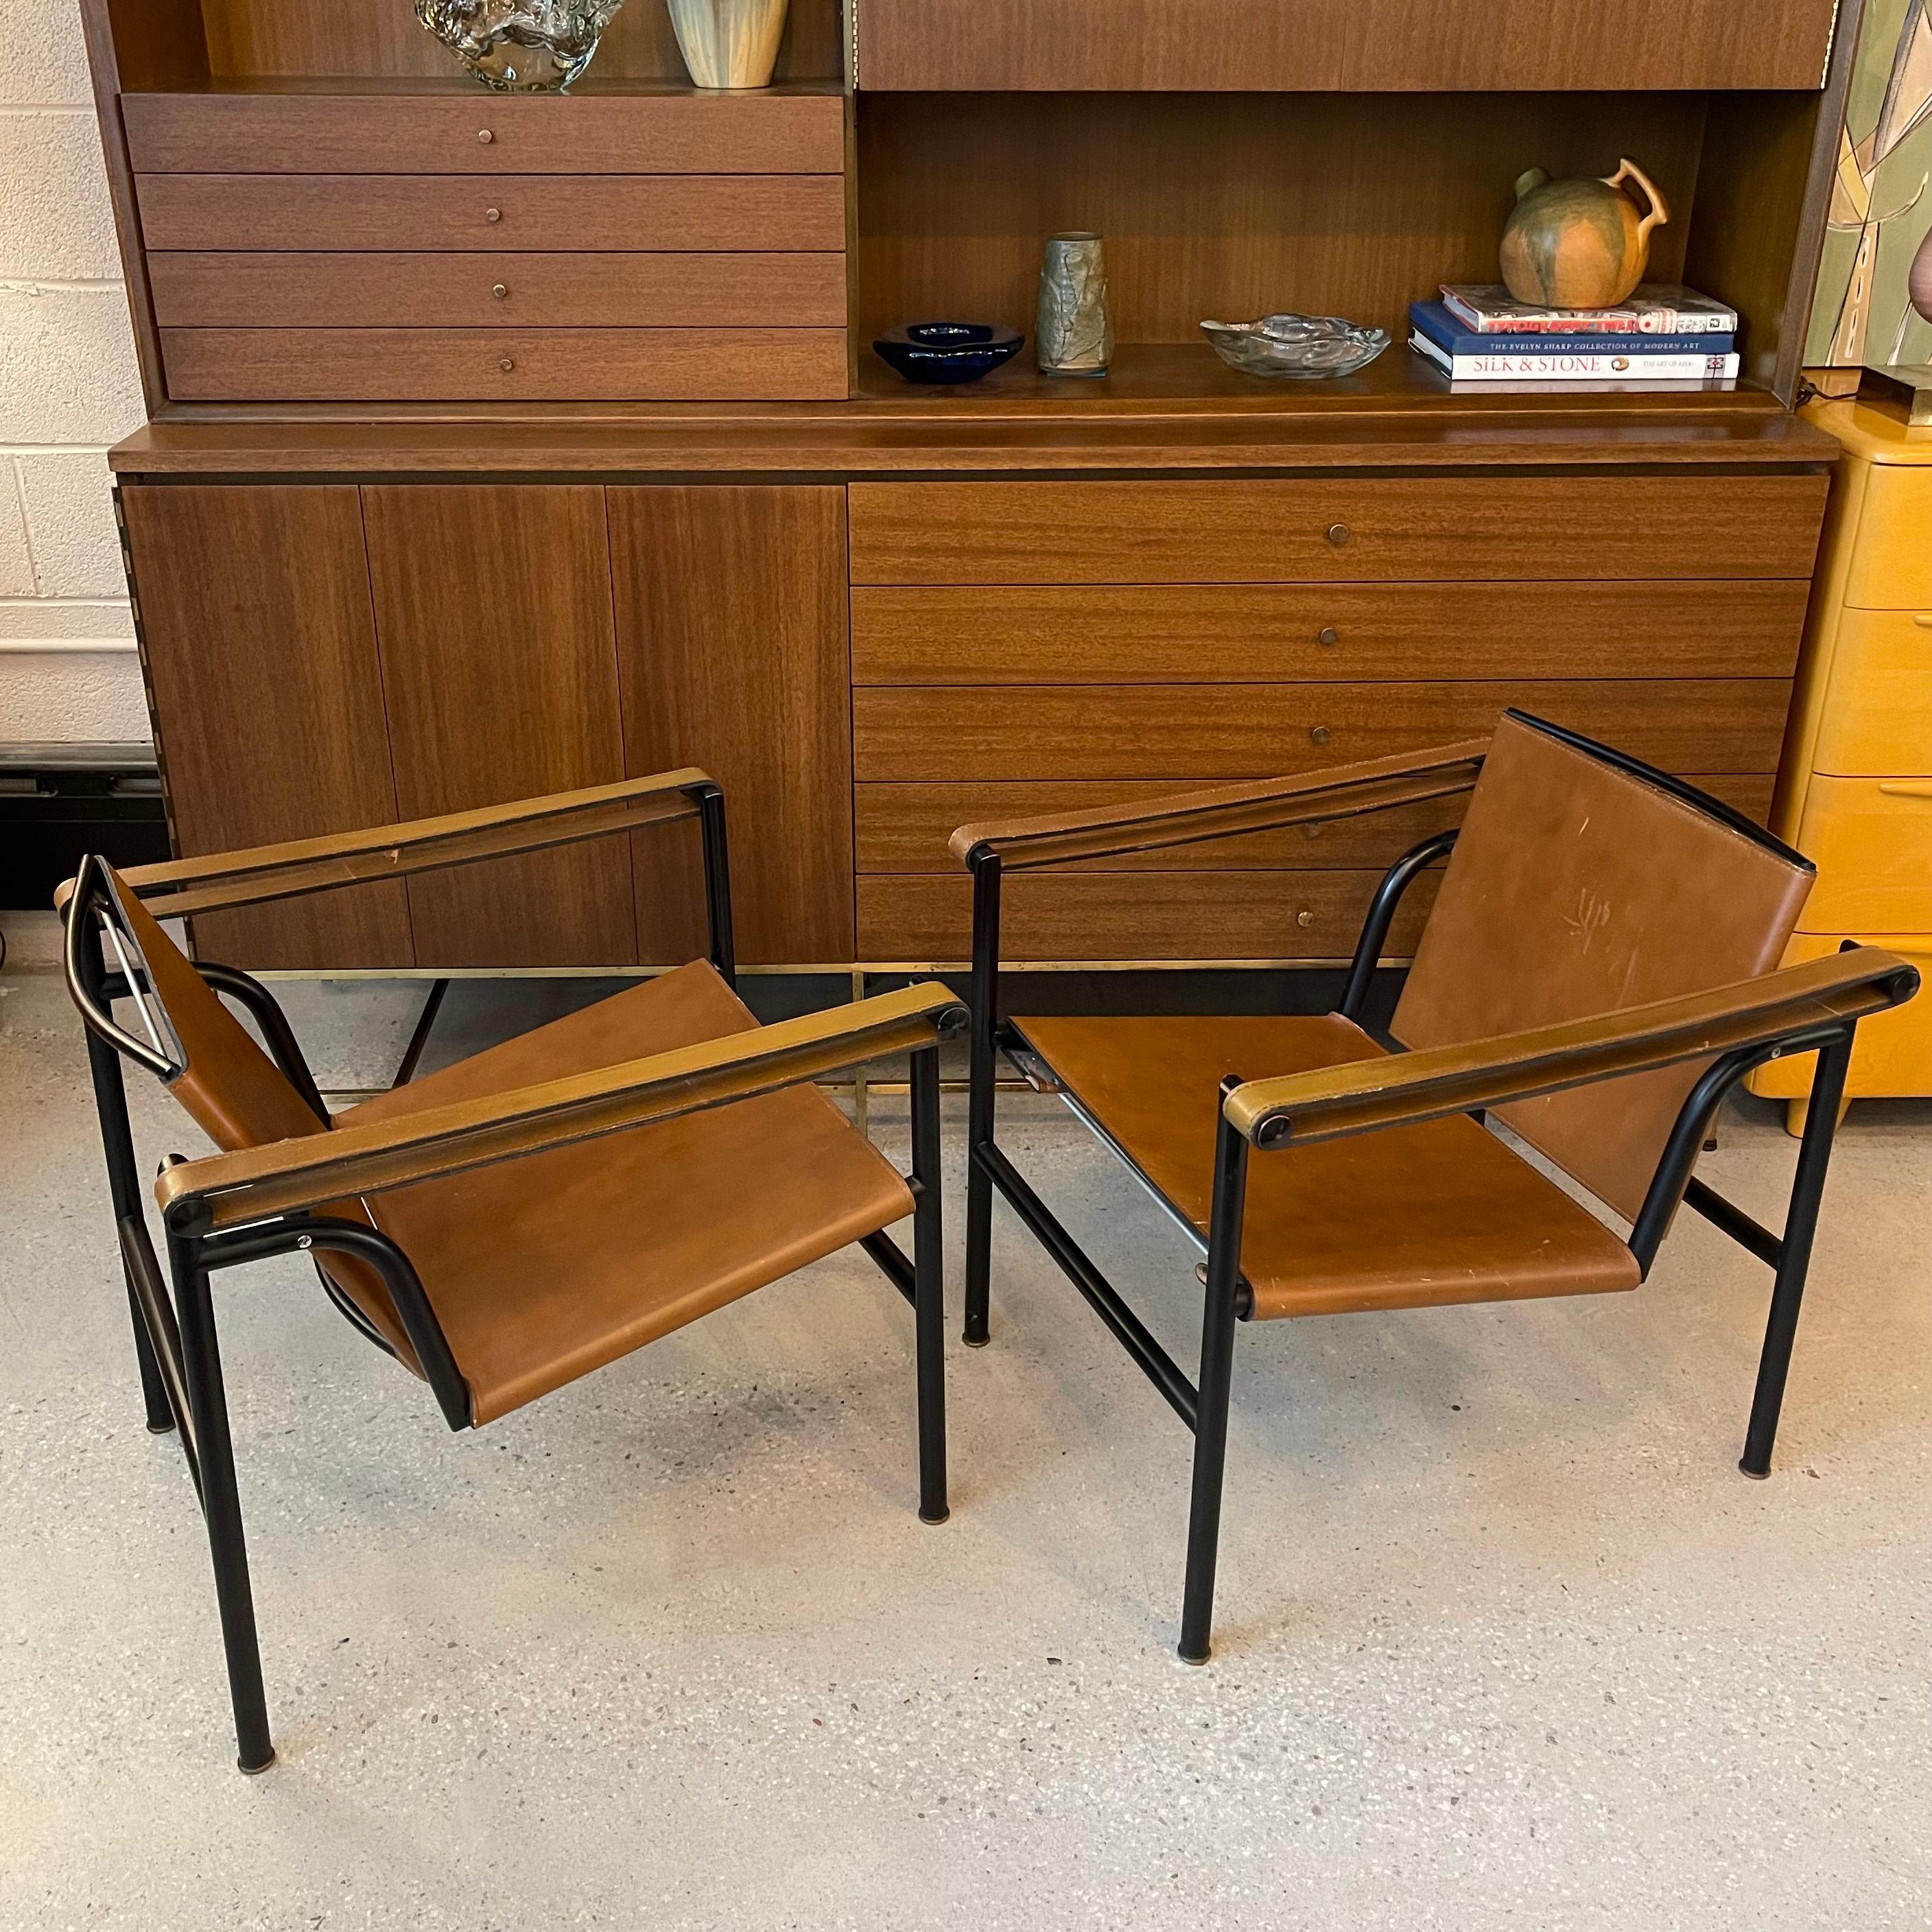 Paire de fauteuils LC1, Basculant, conçus par Le Corbusier, Pierre Jeanneret et Charlotte Perriand en 1928 et fabriqués par Cassina, Italie, dans les années 1970. Ces chaises emblématiques du Bauhaus sont dotées d'une structure basse et élégante en